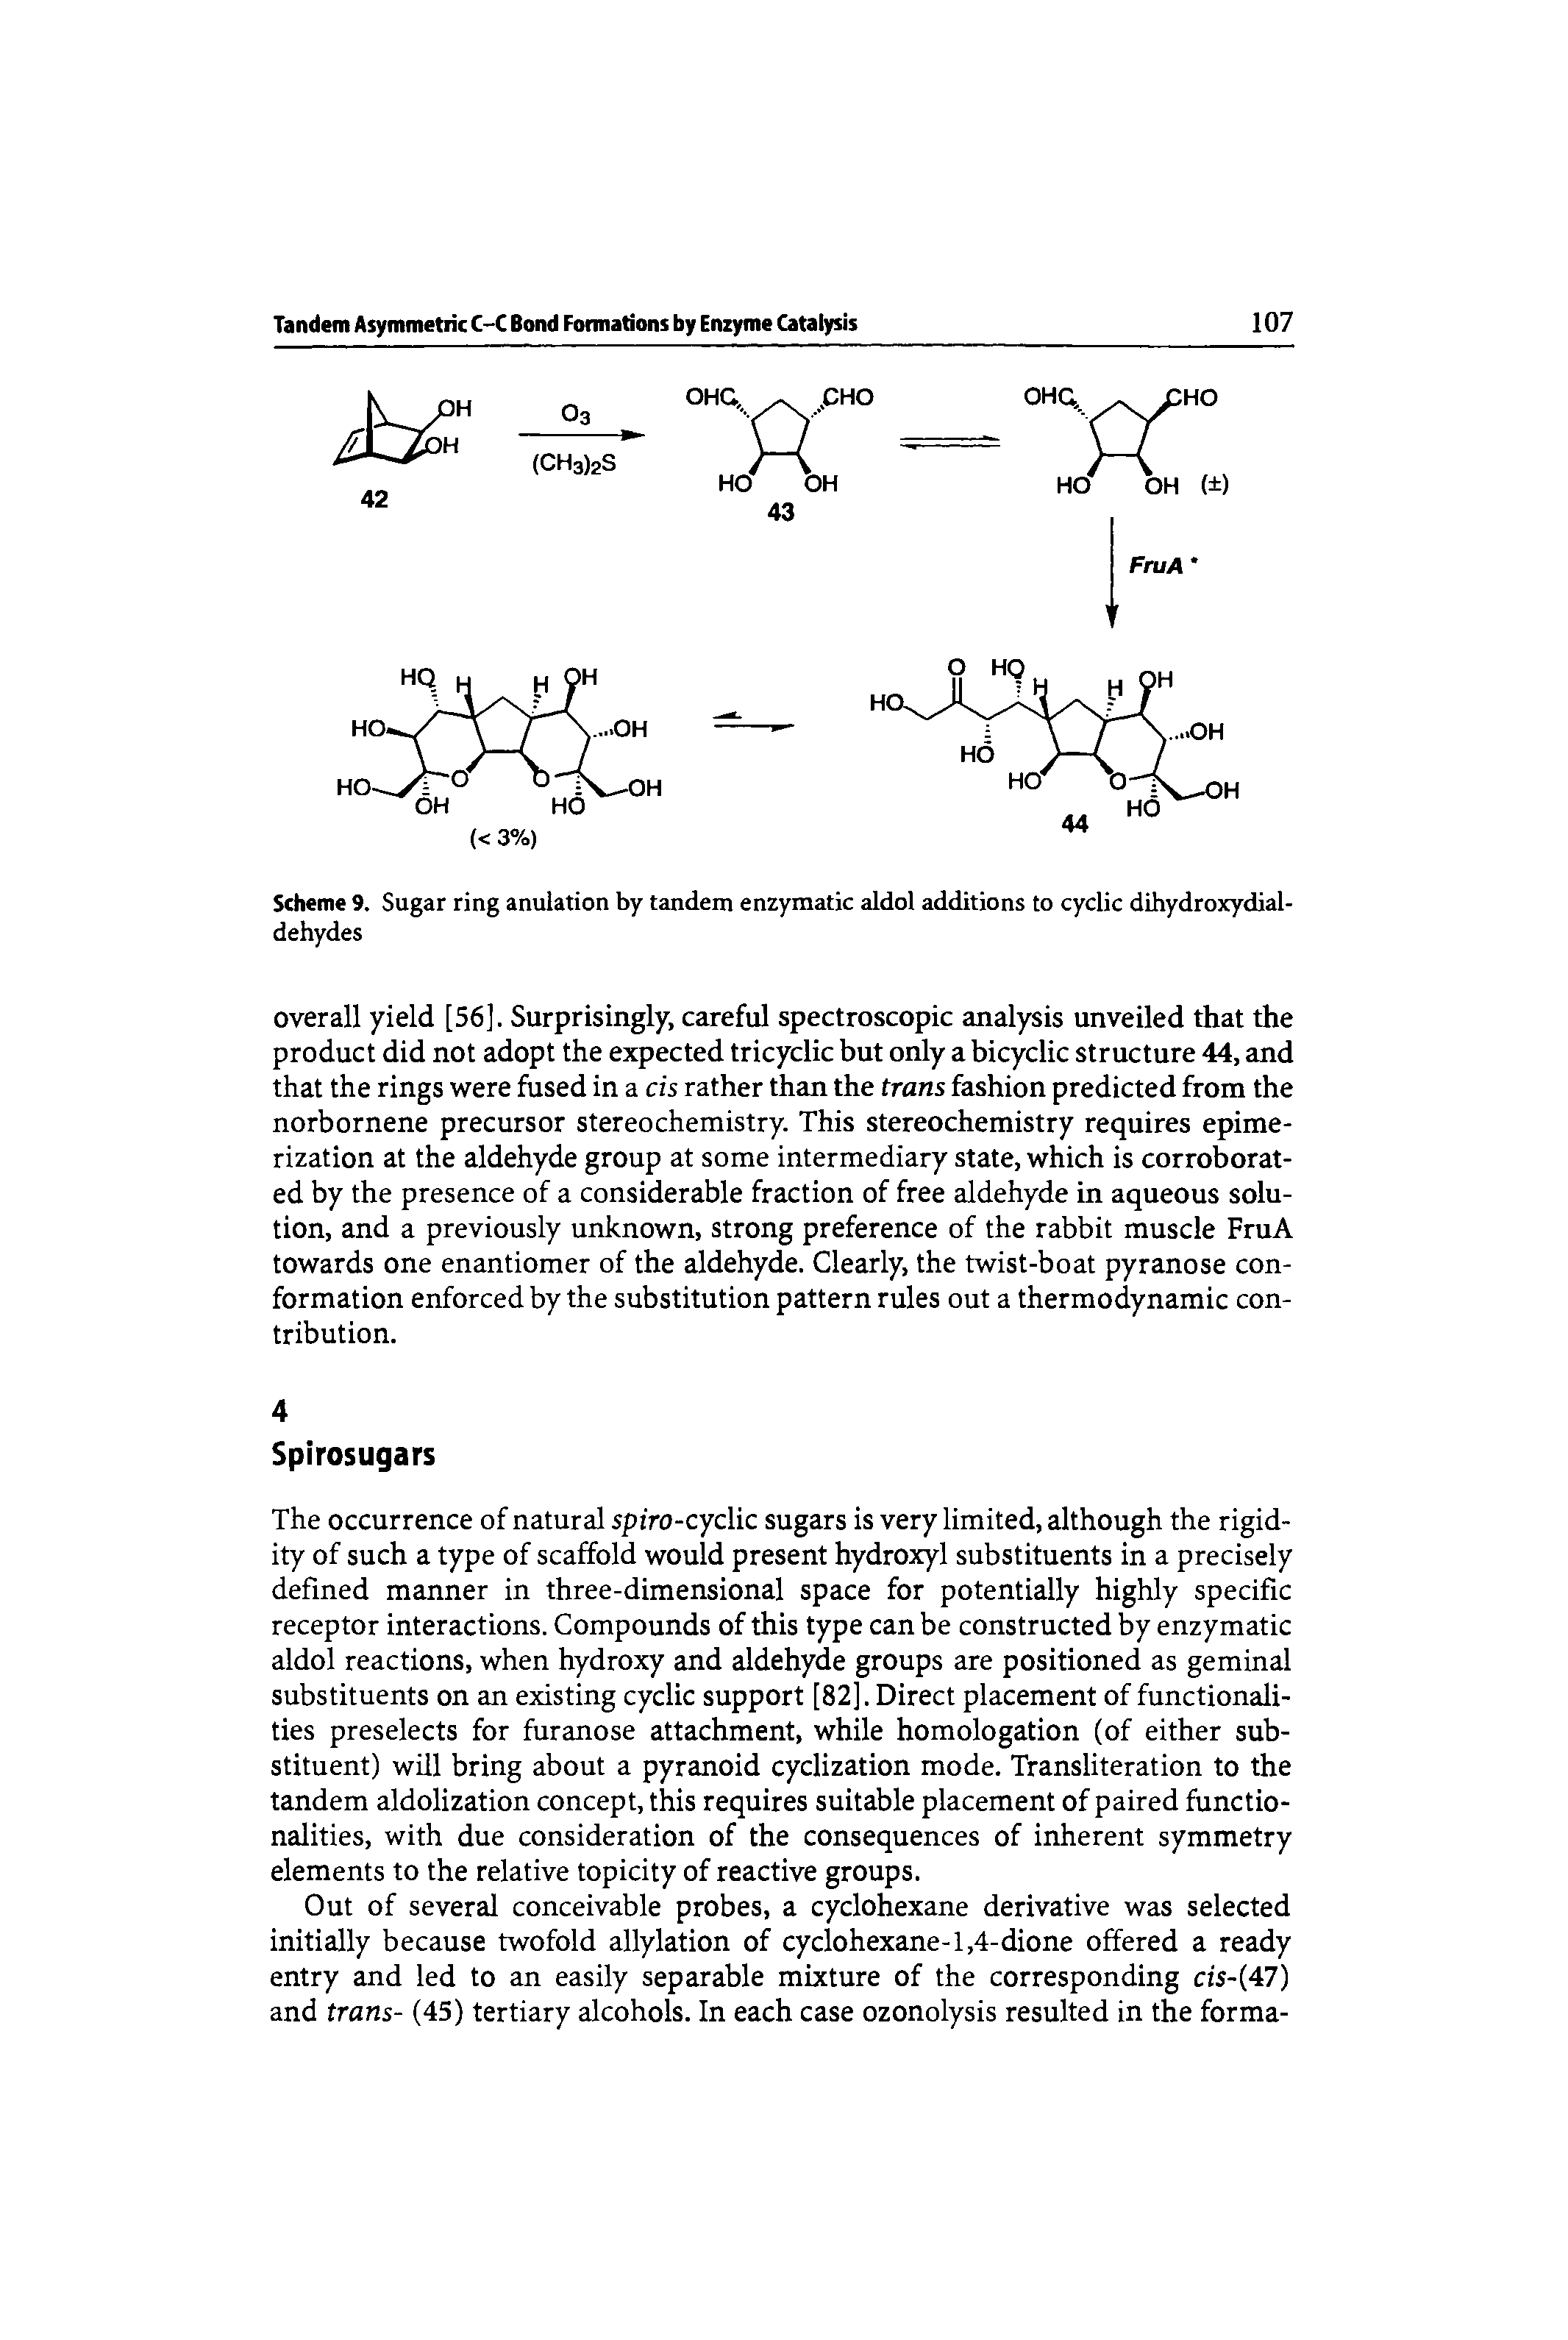 Scheme 9. Sugar ring anulation by tandem enzymatic aldol additions to cyclic dihydroxydial-dehydes...